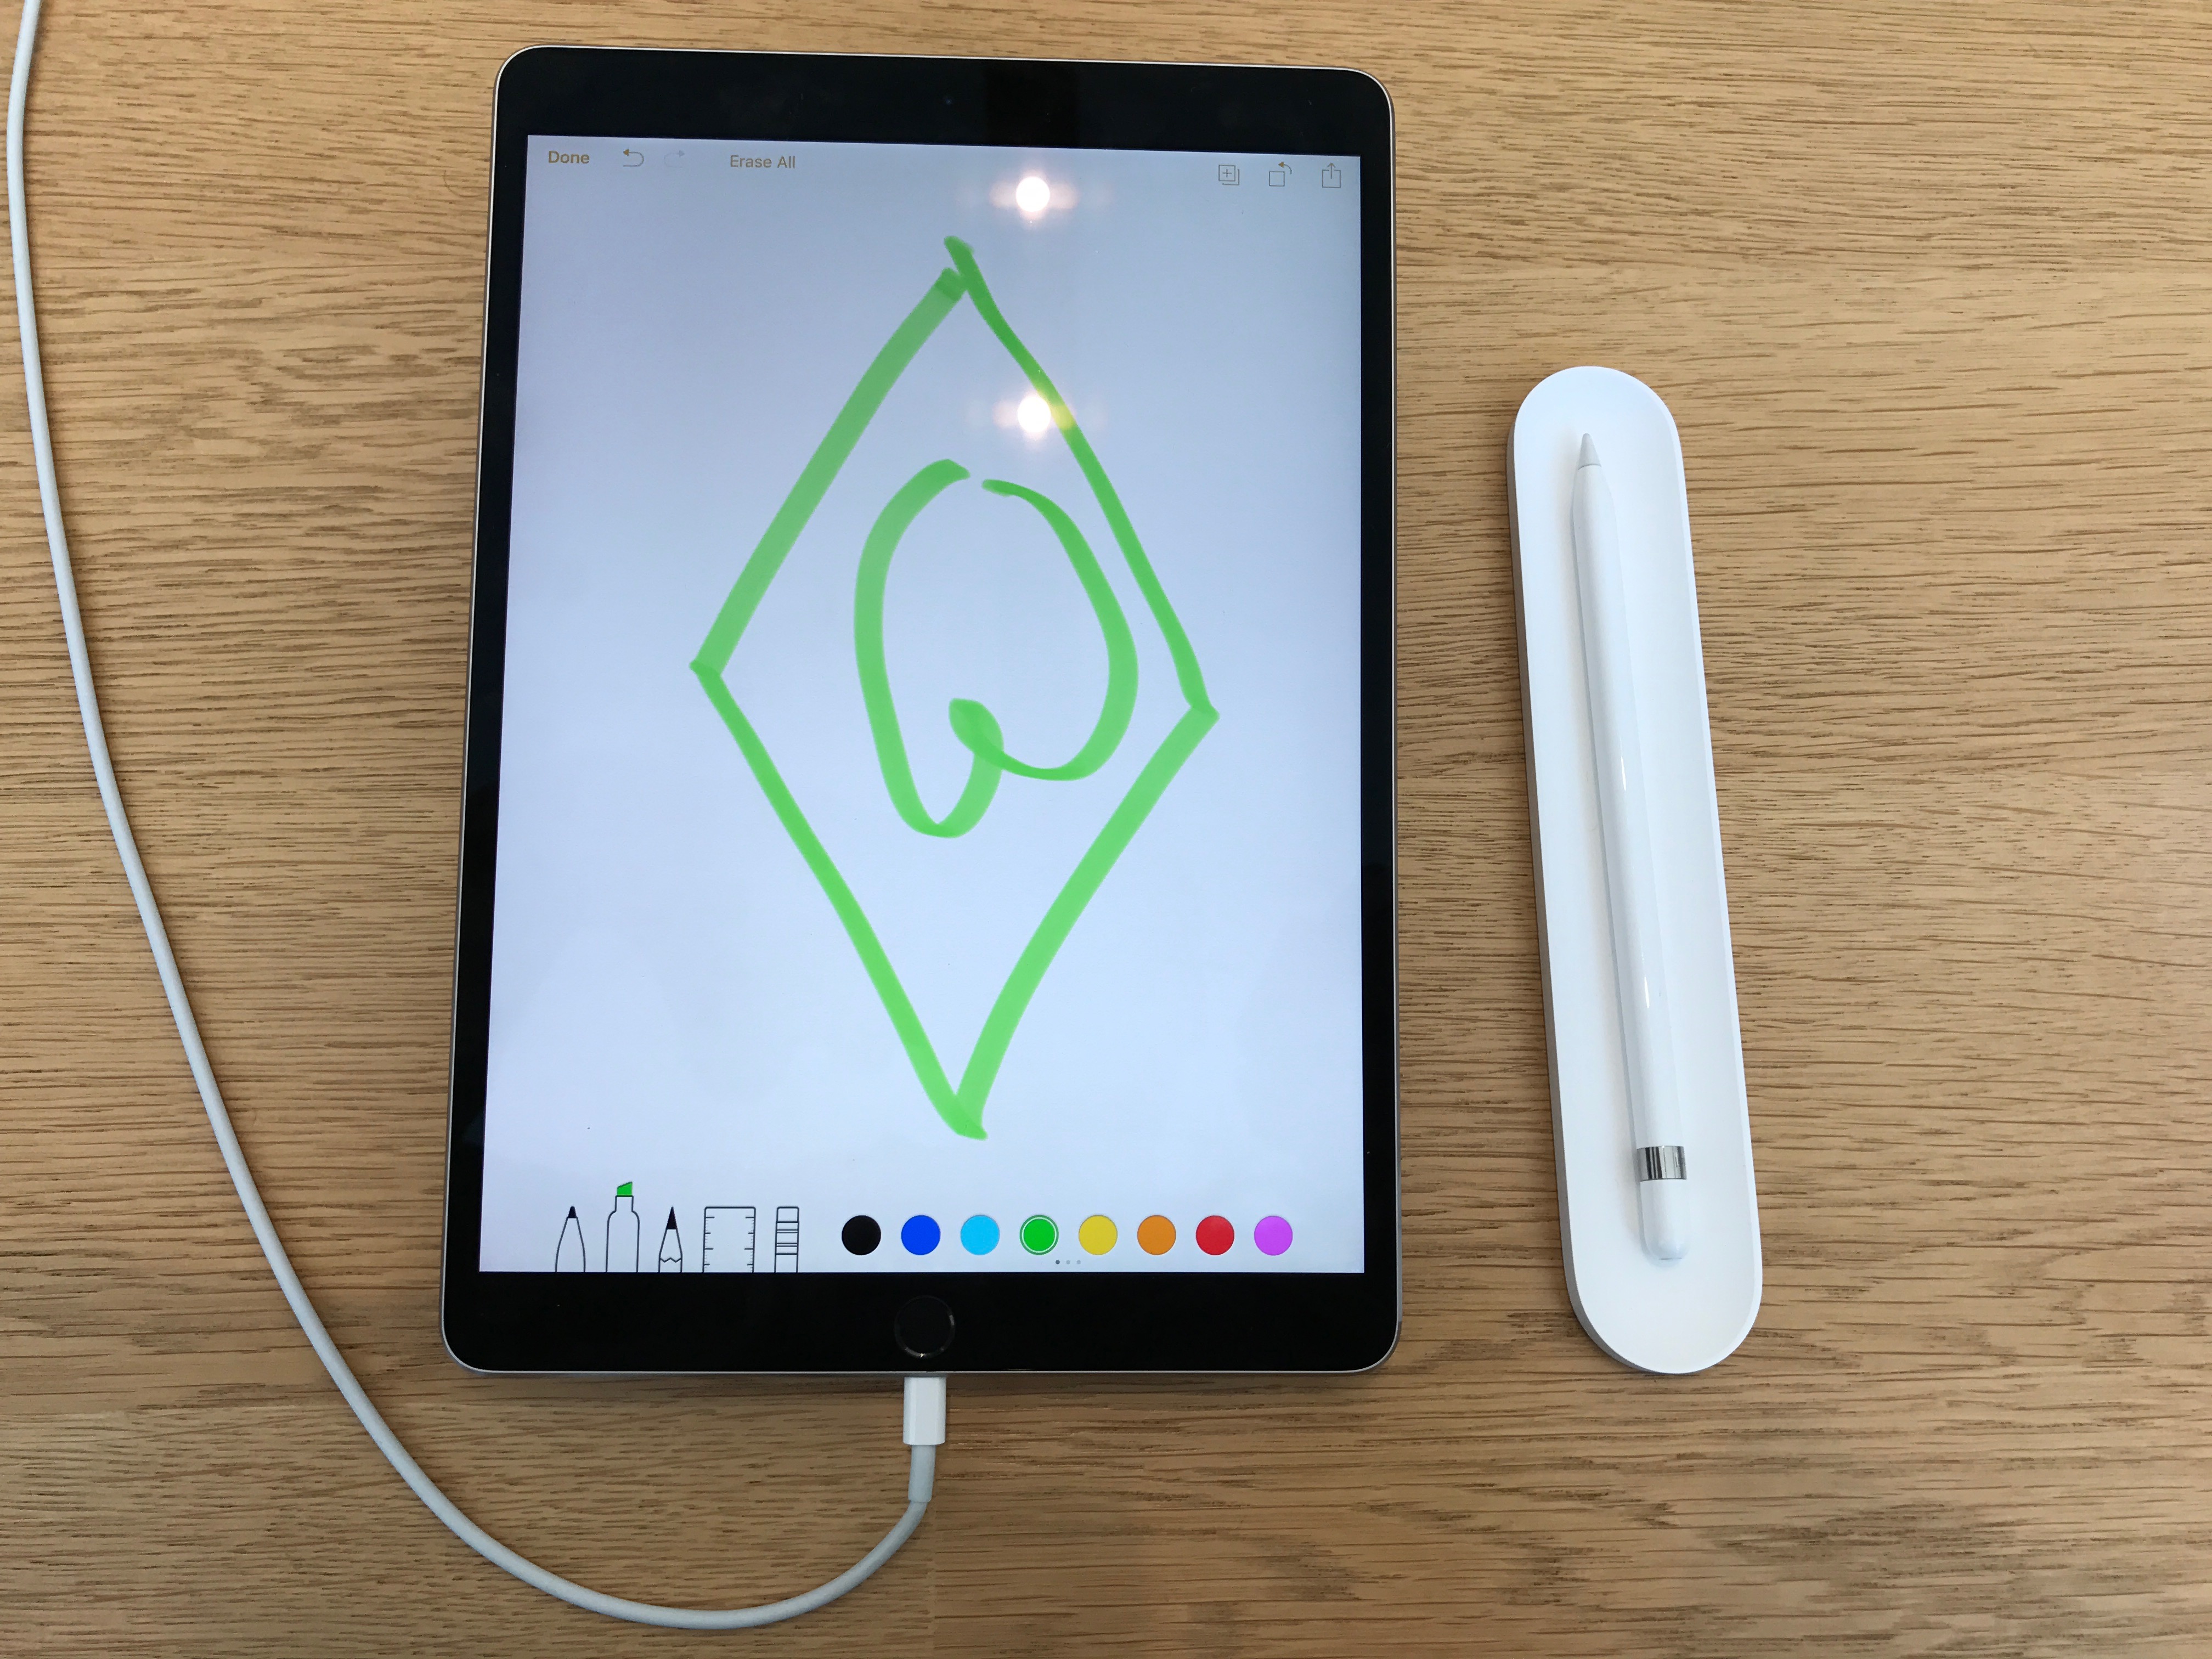 Das neue iPad kann was. Zum Beispiel das Werder-Logo anzeigen.